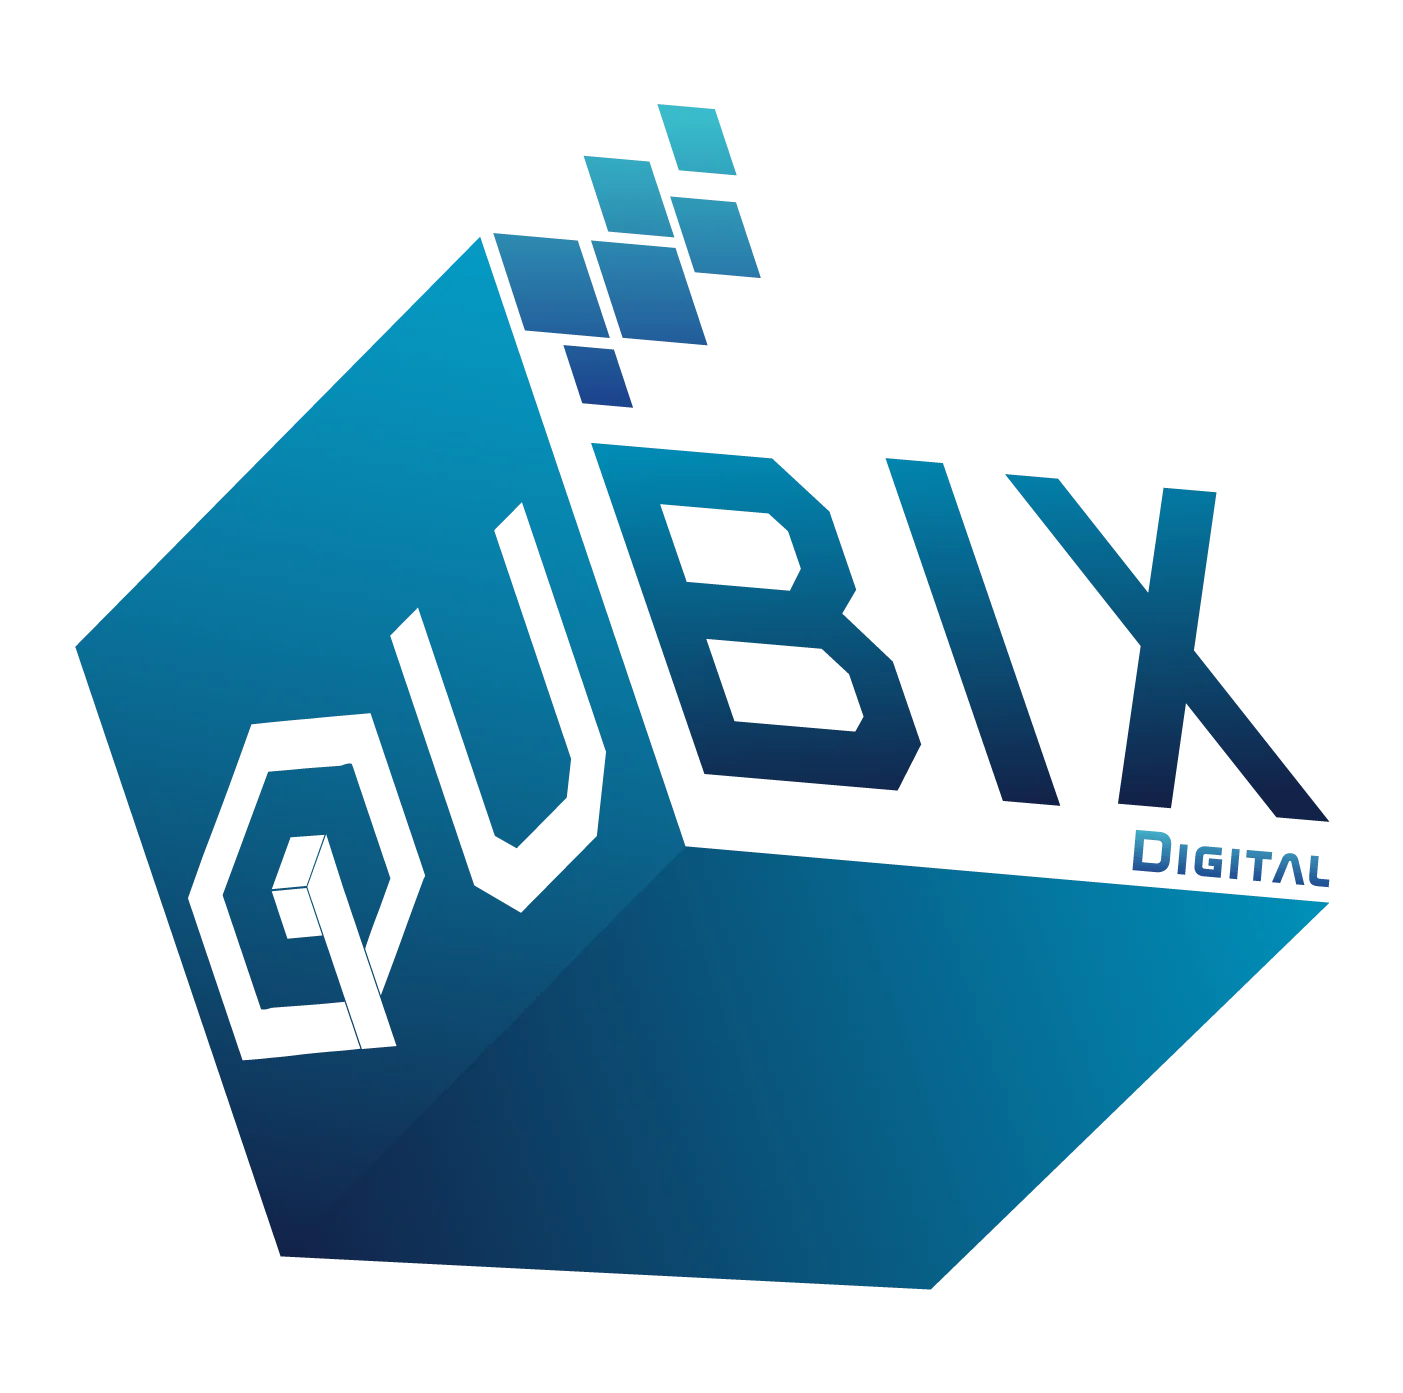 Qubix Digital